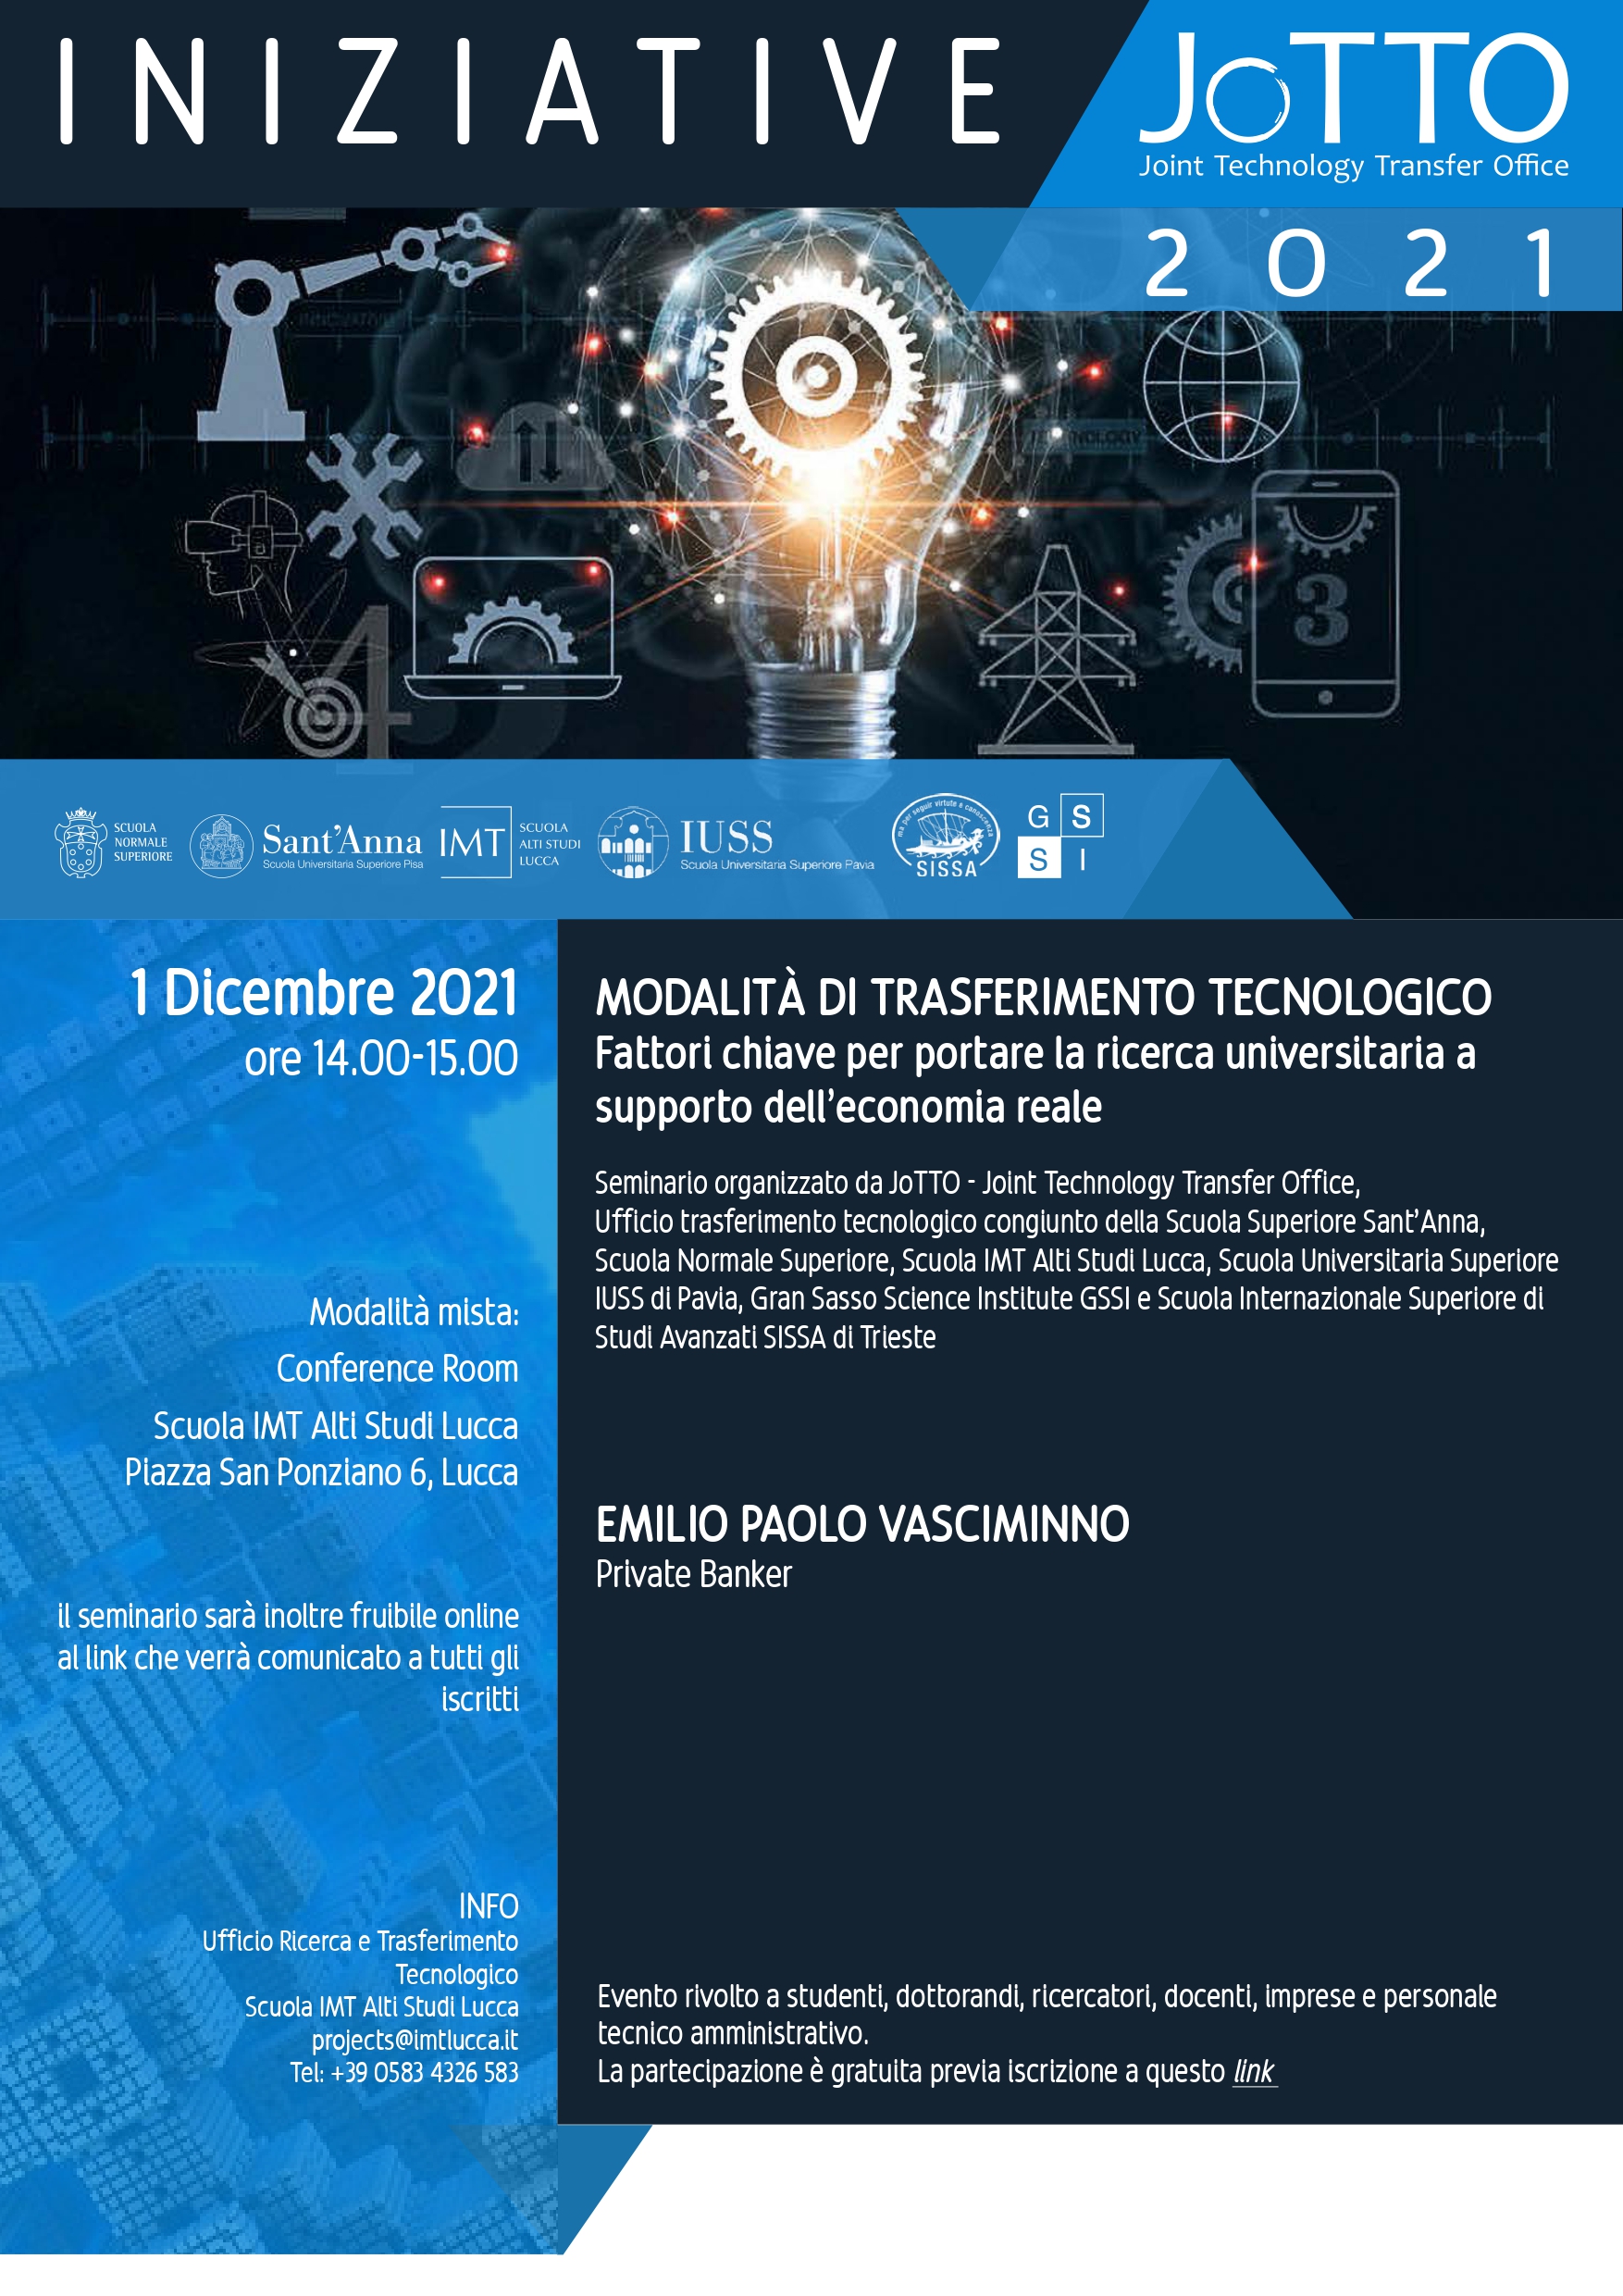 1 Dicembre, seminario organizzato da JoTTO: Modalità di trasferimento tecnologico: fattori chiave per portare la ricerca universitaria a supporto dell’economia reale